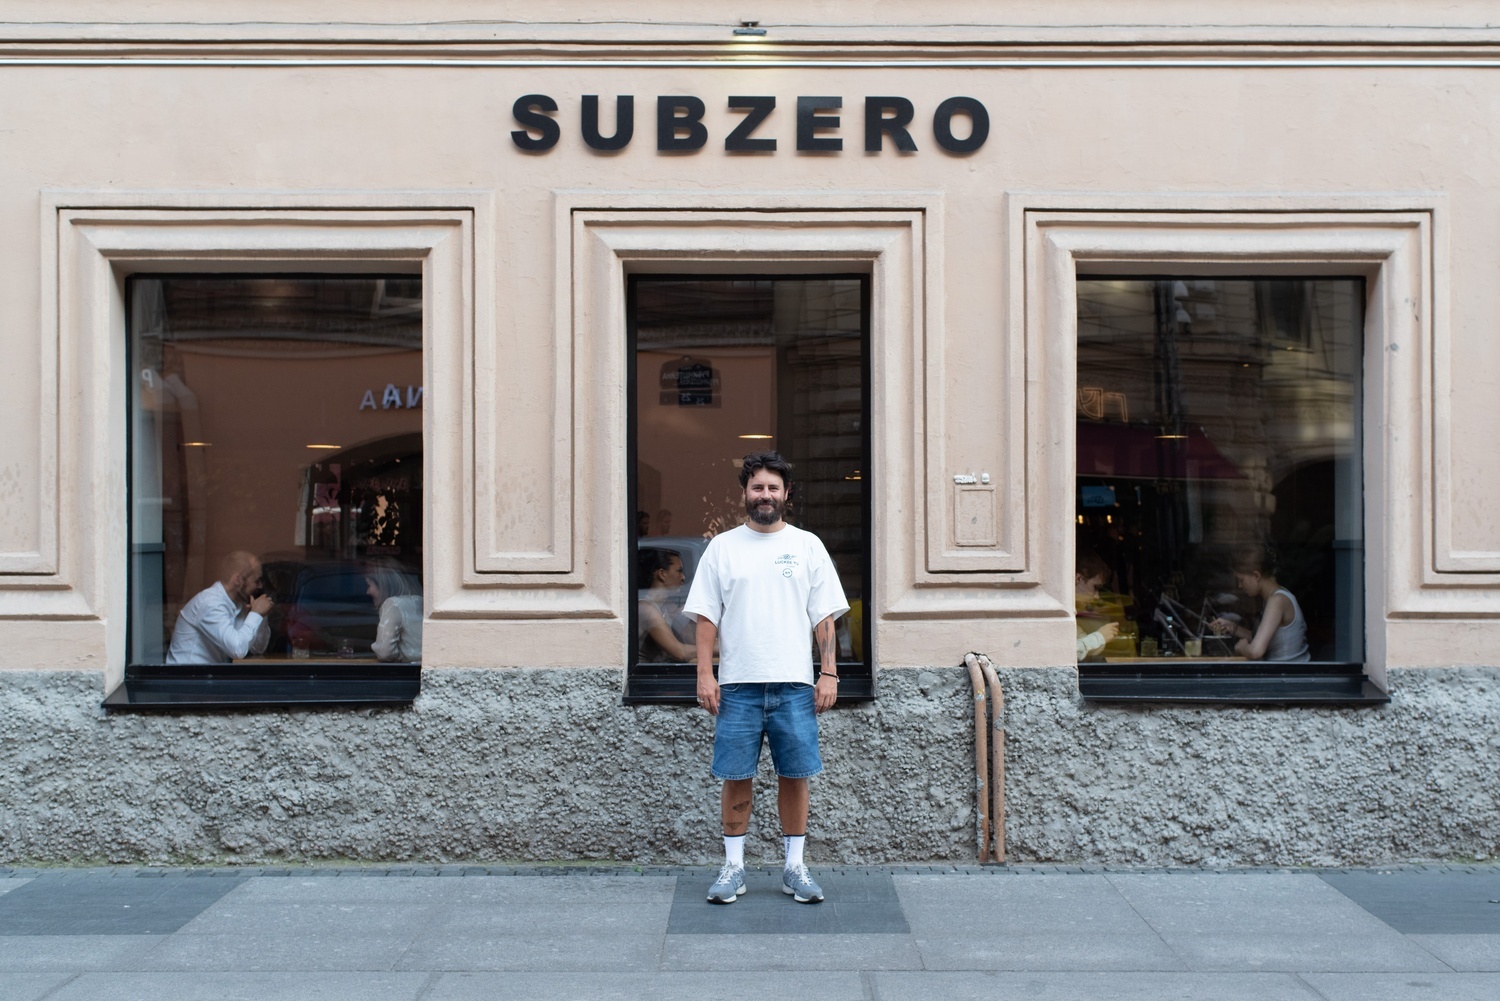 Рост цен, нехватка персонала и закрытие проектов — создатели Subzero развивают бизнес, несмотря на все эти проблемы. Как им это удается и зачем открывать ресторан в Тбилиси